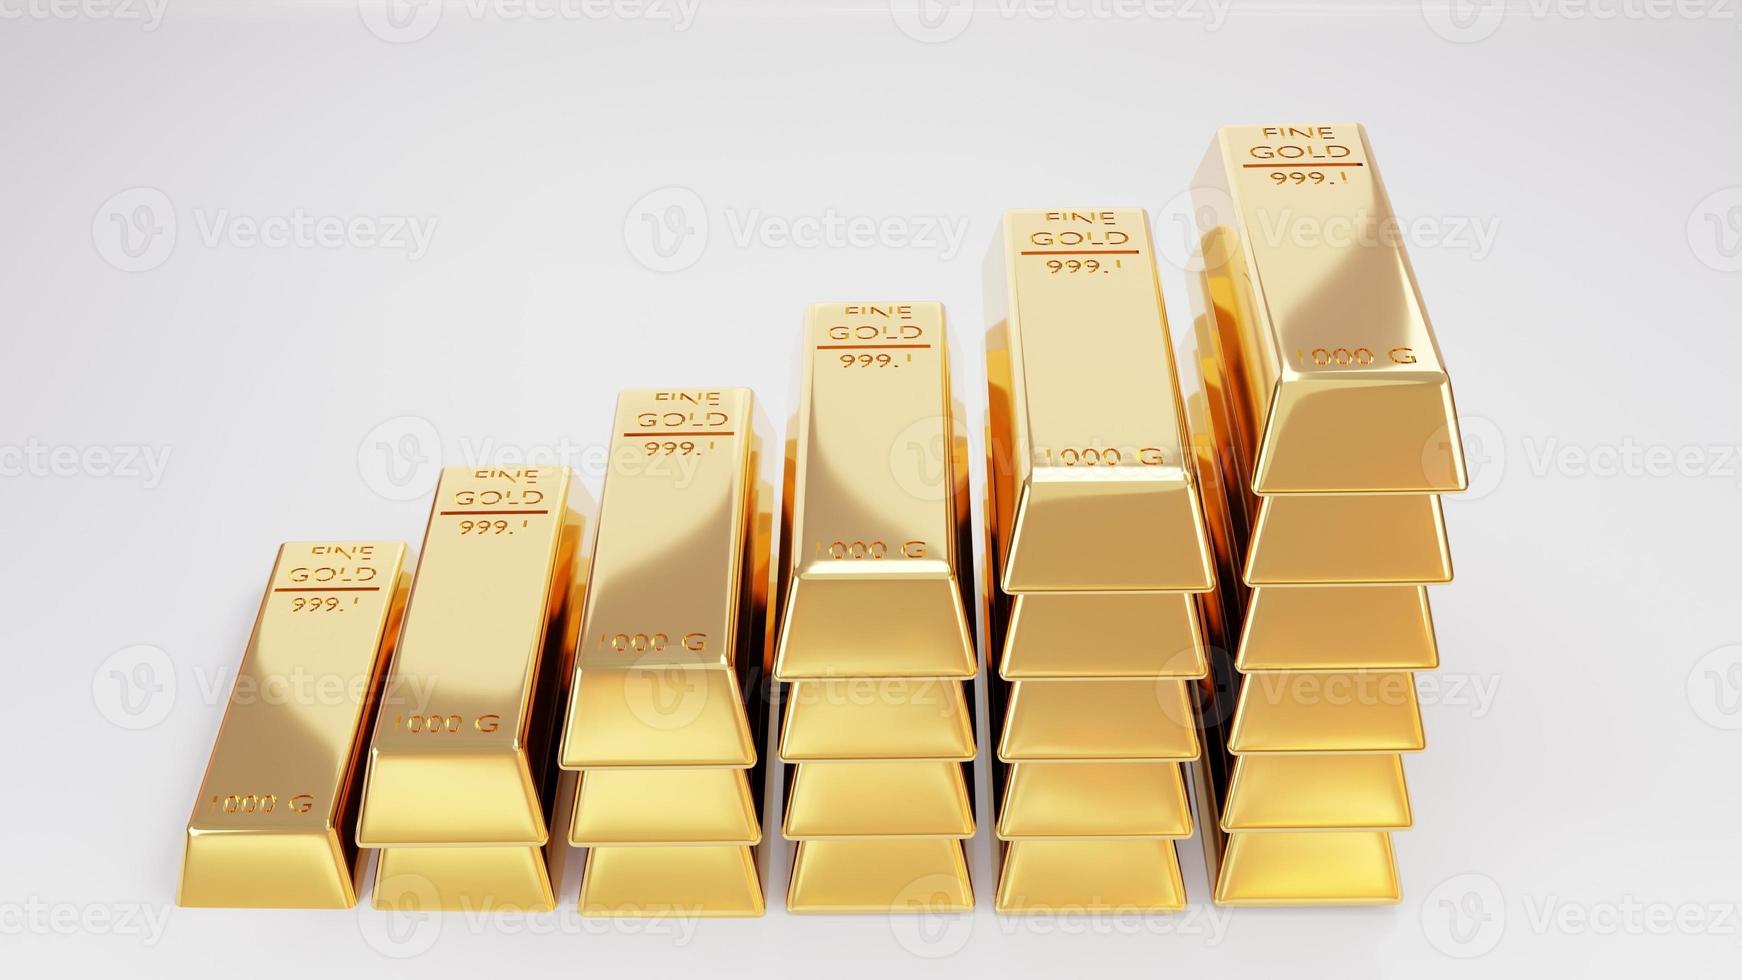 Goldgeschäft Investitionen Goldhandel, Bankgeschäftsideen 3D-Show mit vielen glänzenden Goldbarren Eine Fundgrube für Reichtum und Investitionen für die Zukunft. foto